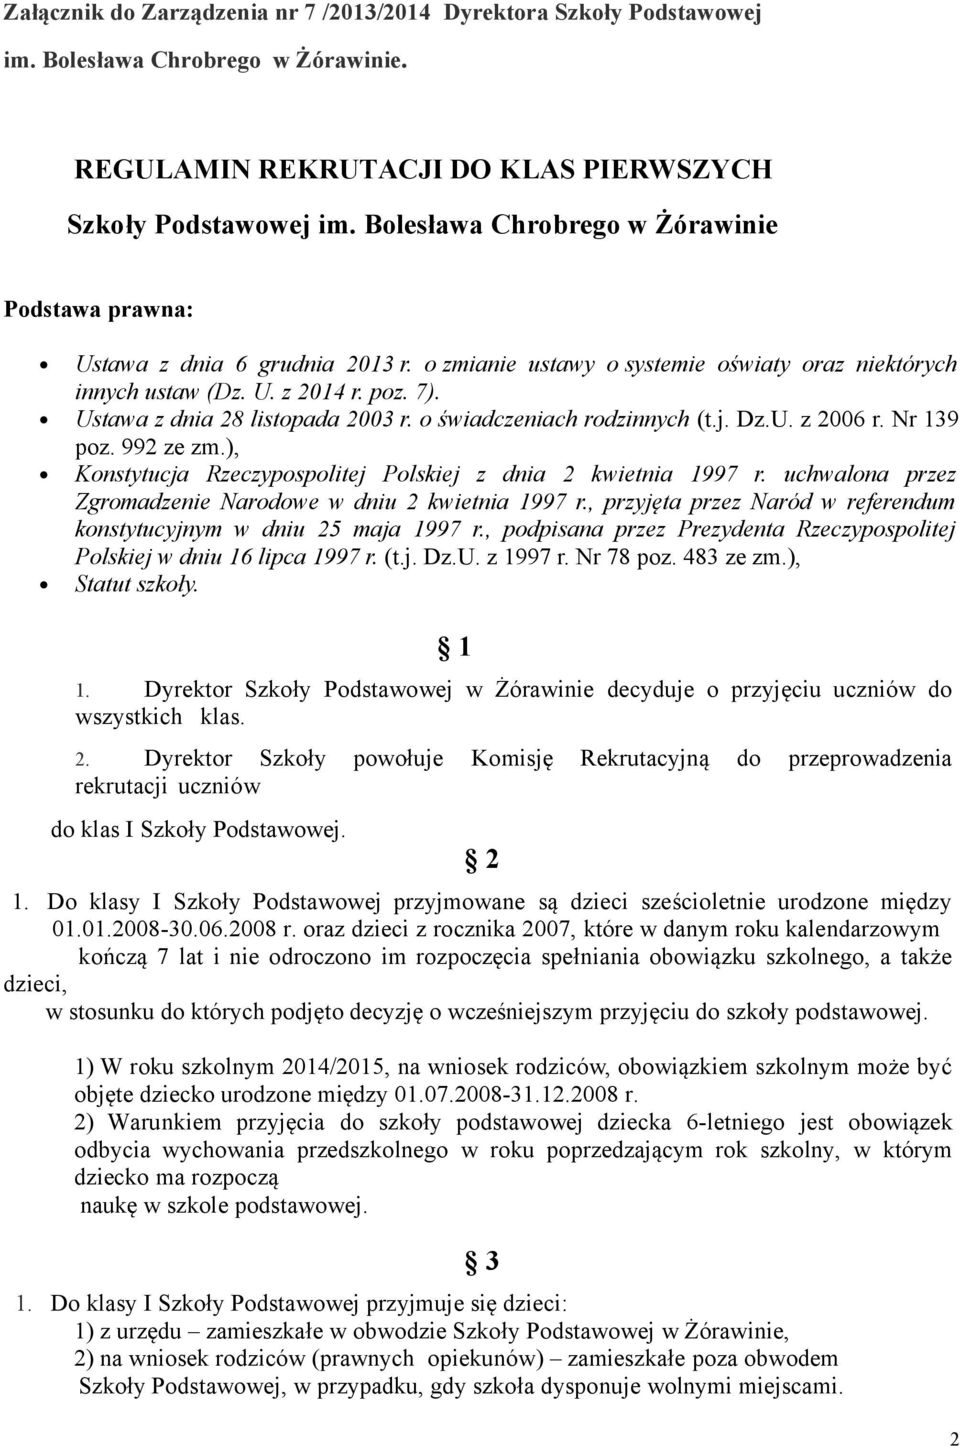 Ustawa z dnia 28 listopada 2003 r. o świadczeniach rodzinnych (t.j. Dz.U. z 2006 r. Nr 139 poz. 992 ze zm.), Konstytucja Rzeczypospolitej Polskiej z dnia 2 kwietnia 1997 r.